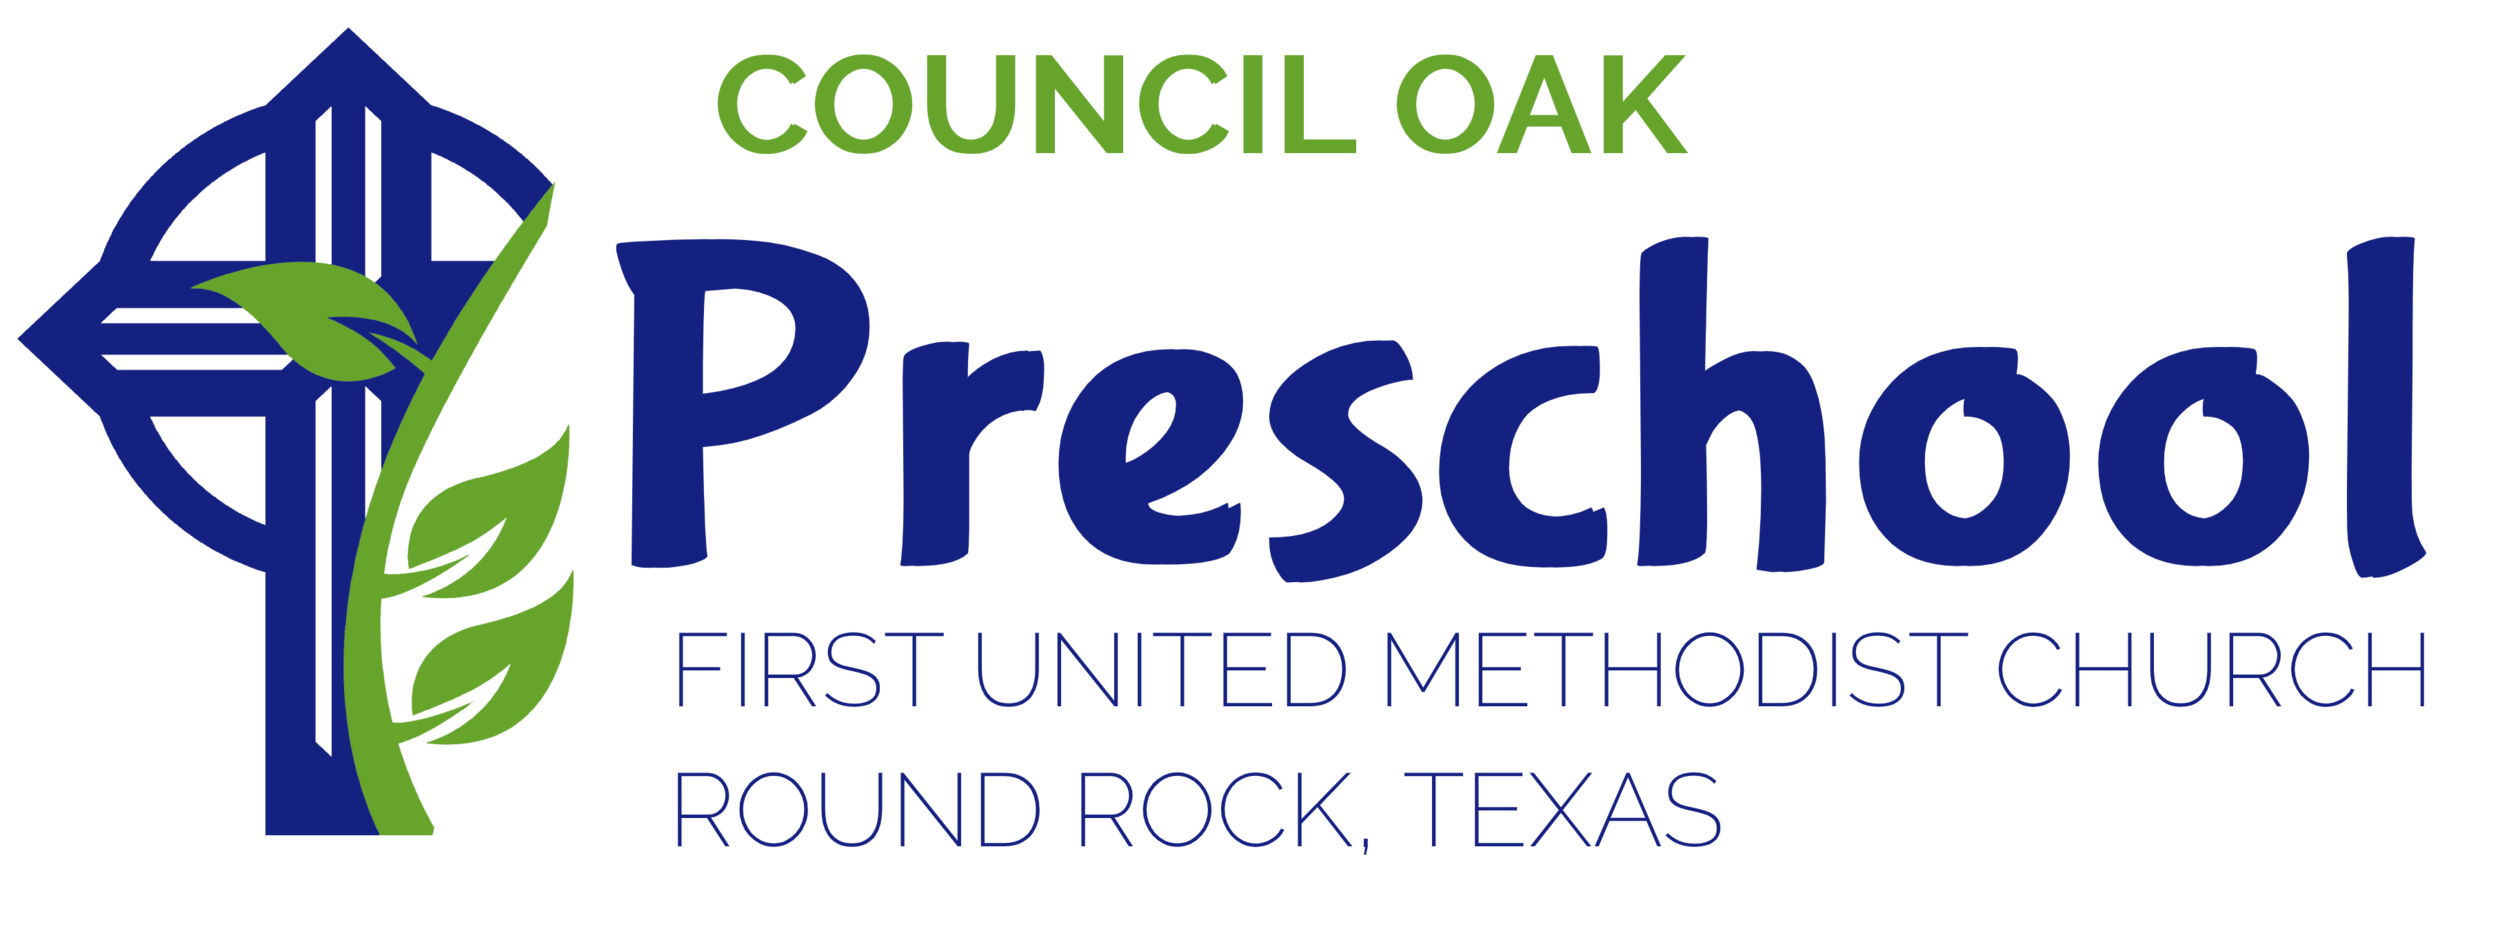 Council Oak Preschool